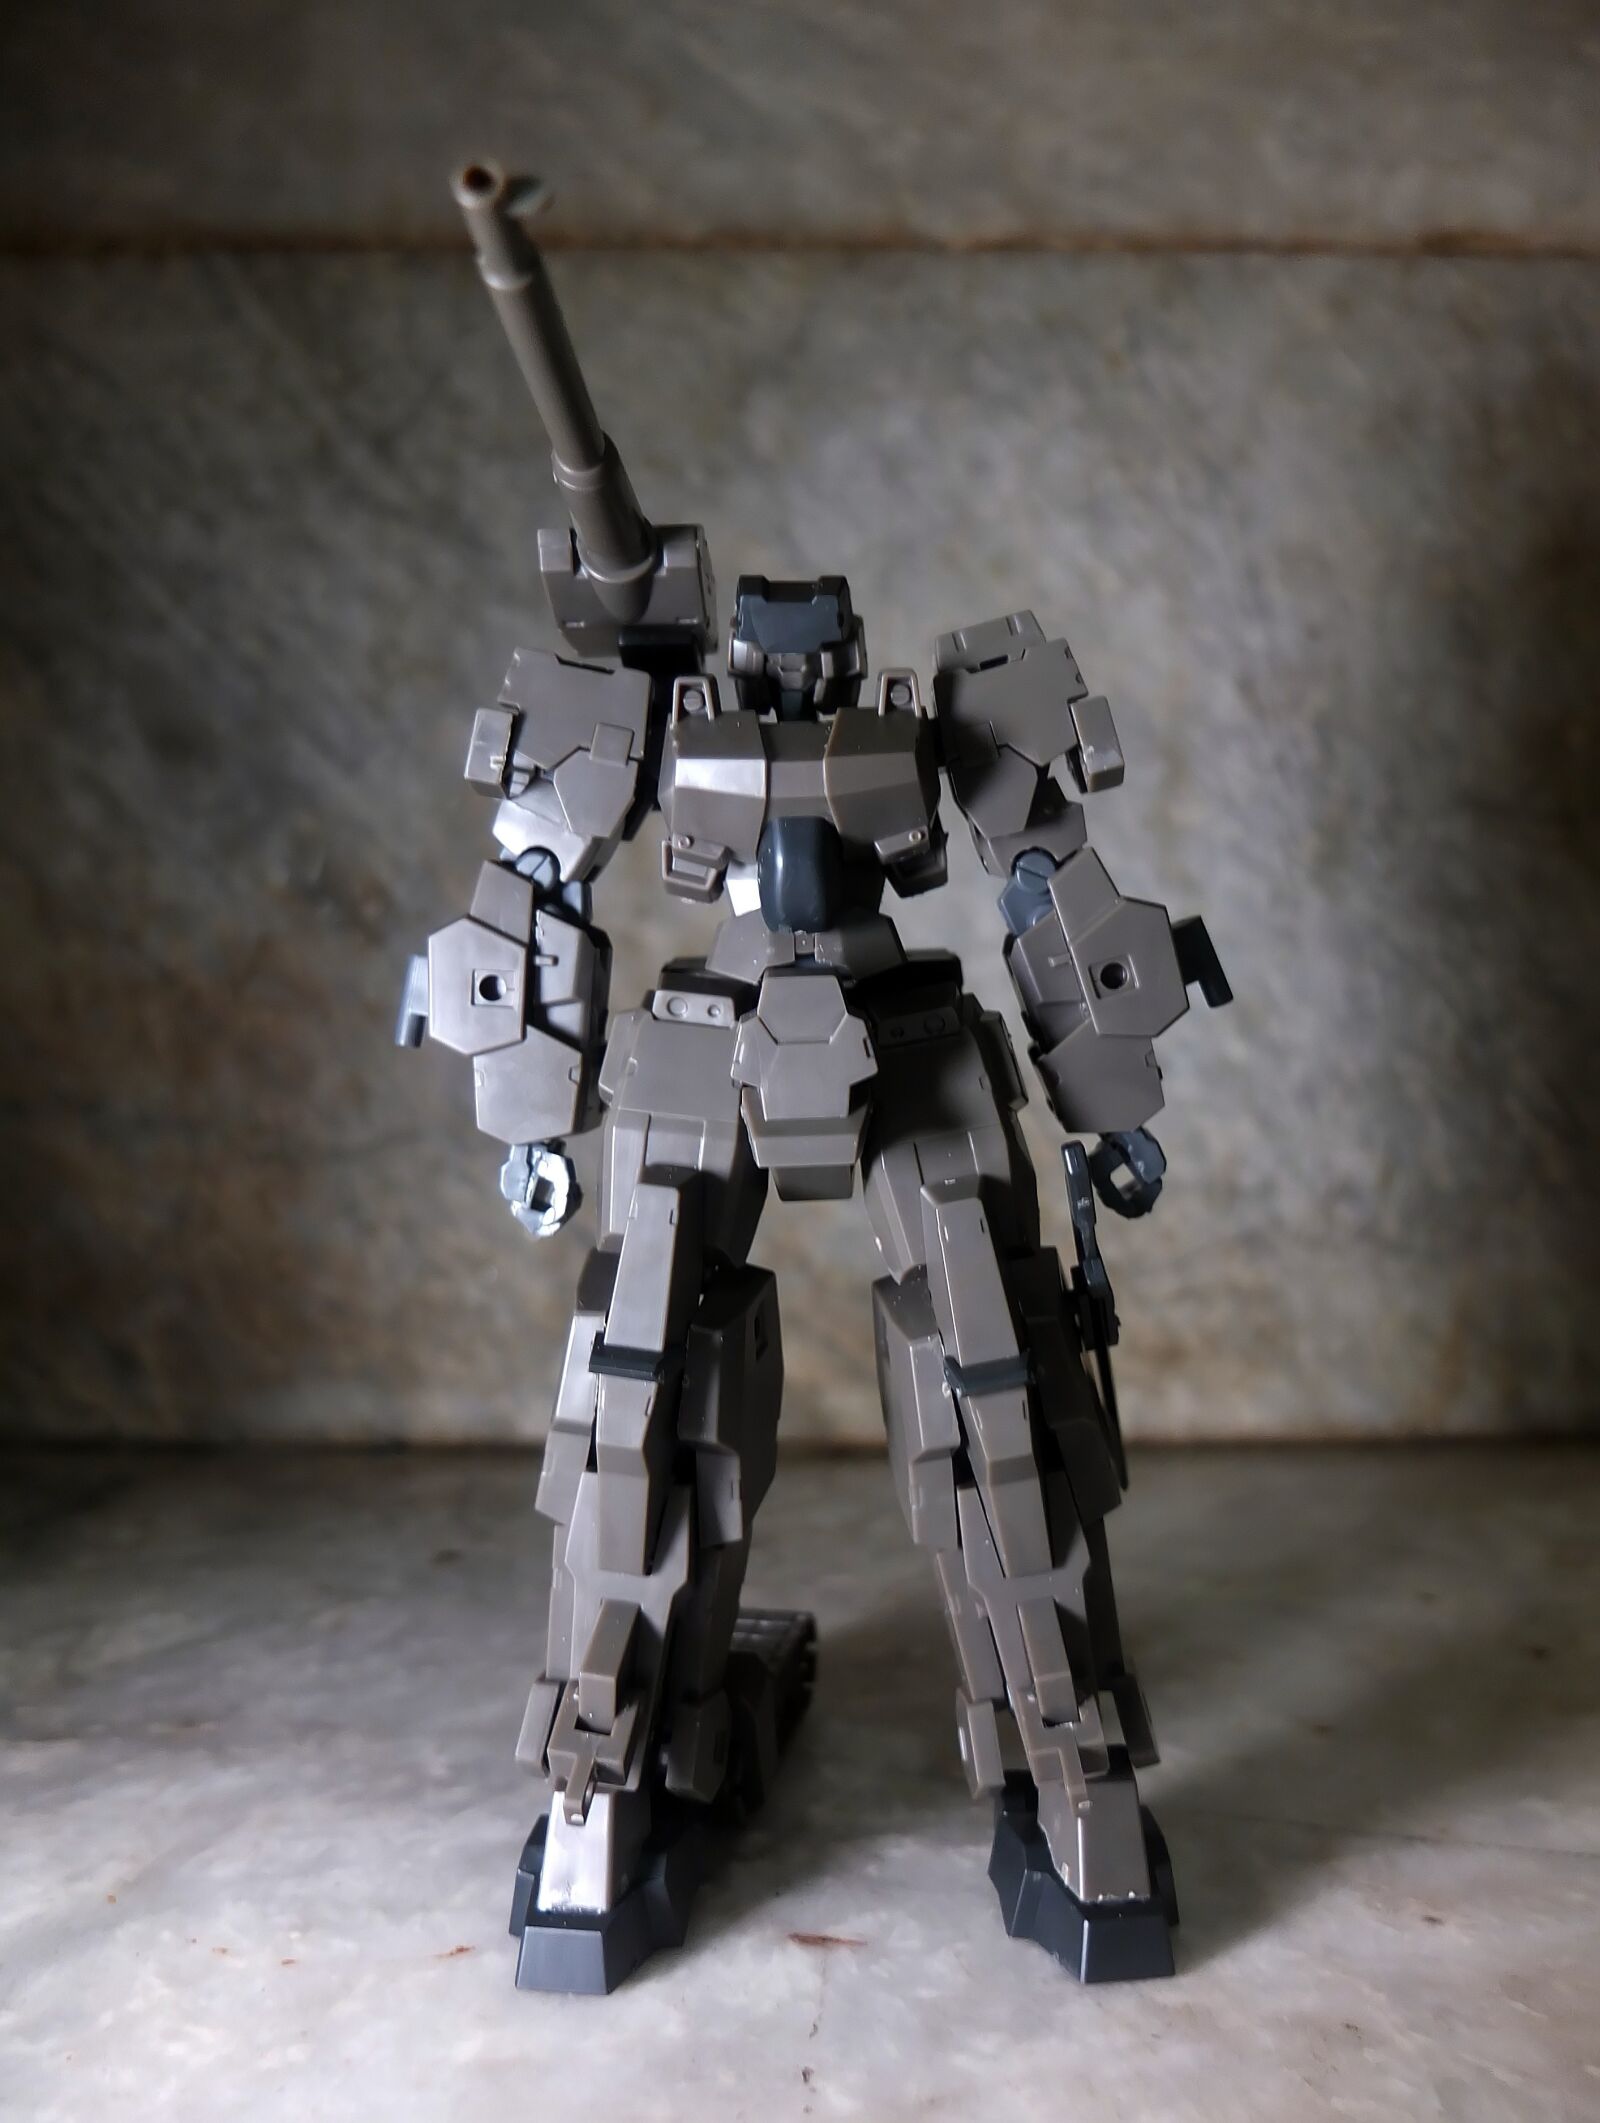 Fujifilm X10 sample photo. Robot, armor, canon photography